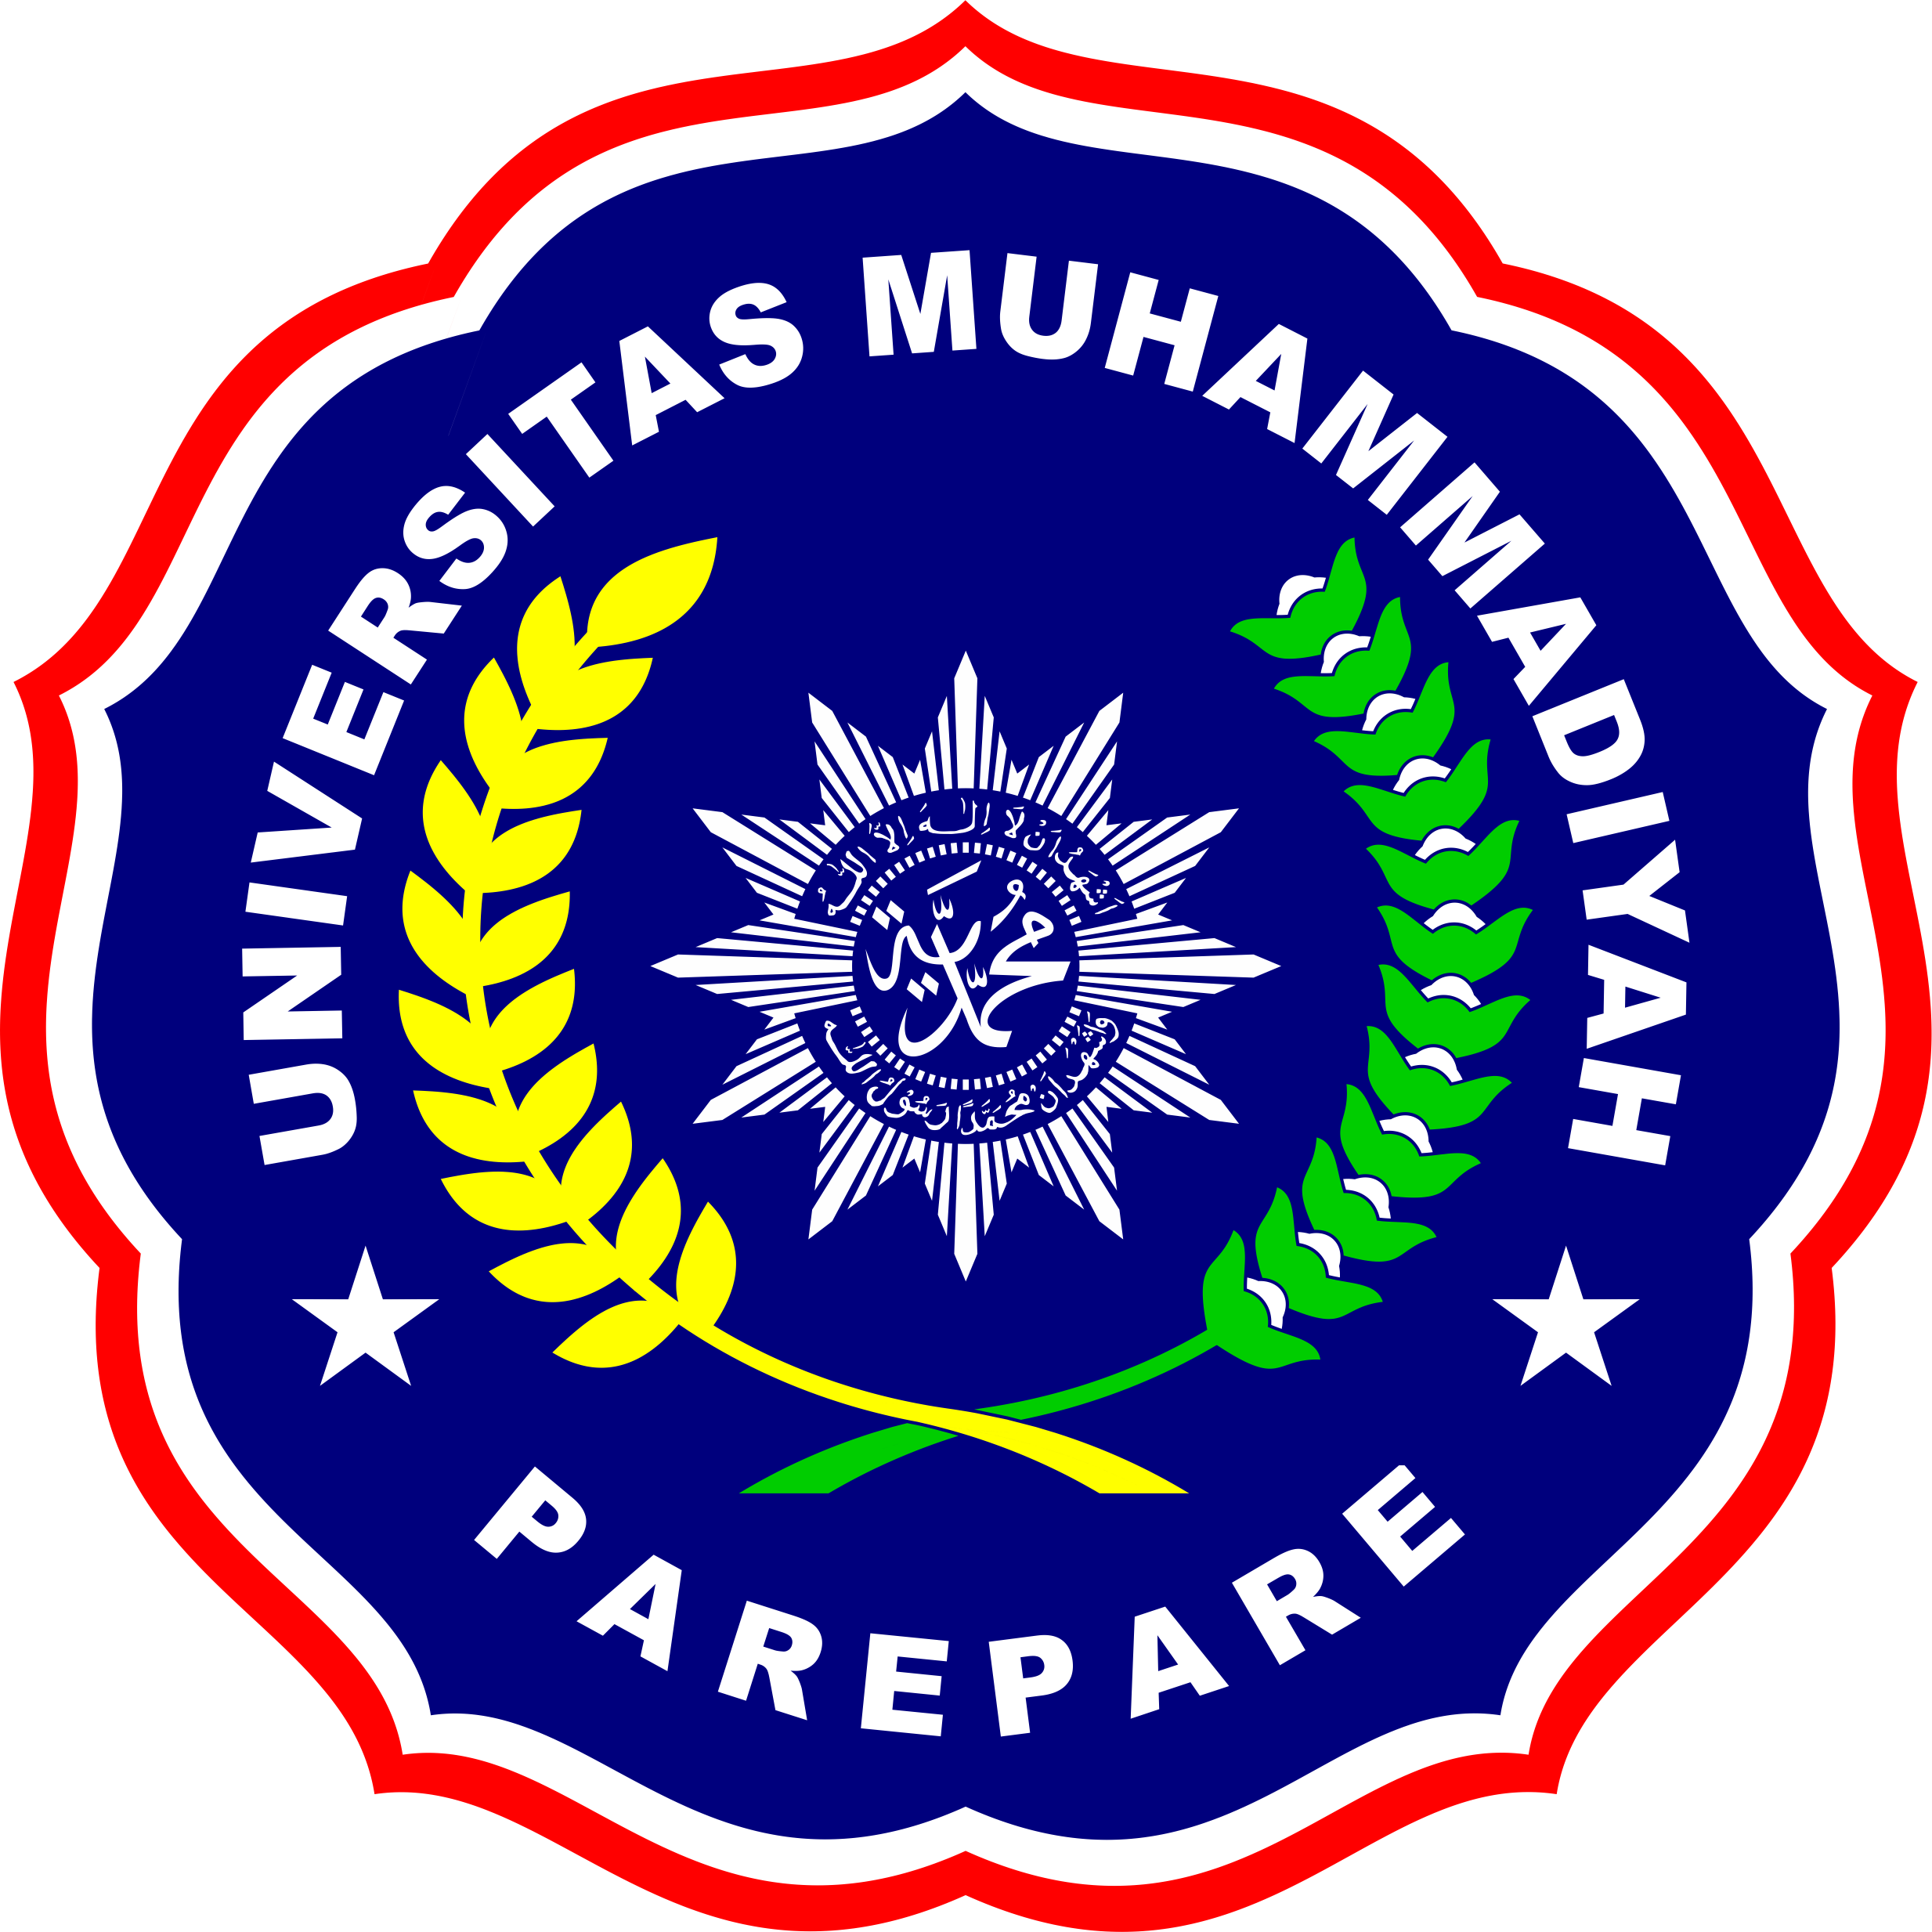 Logo UMPAR